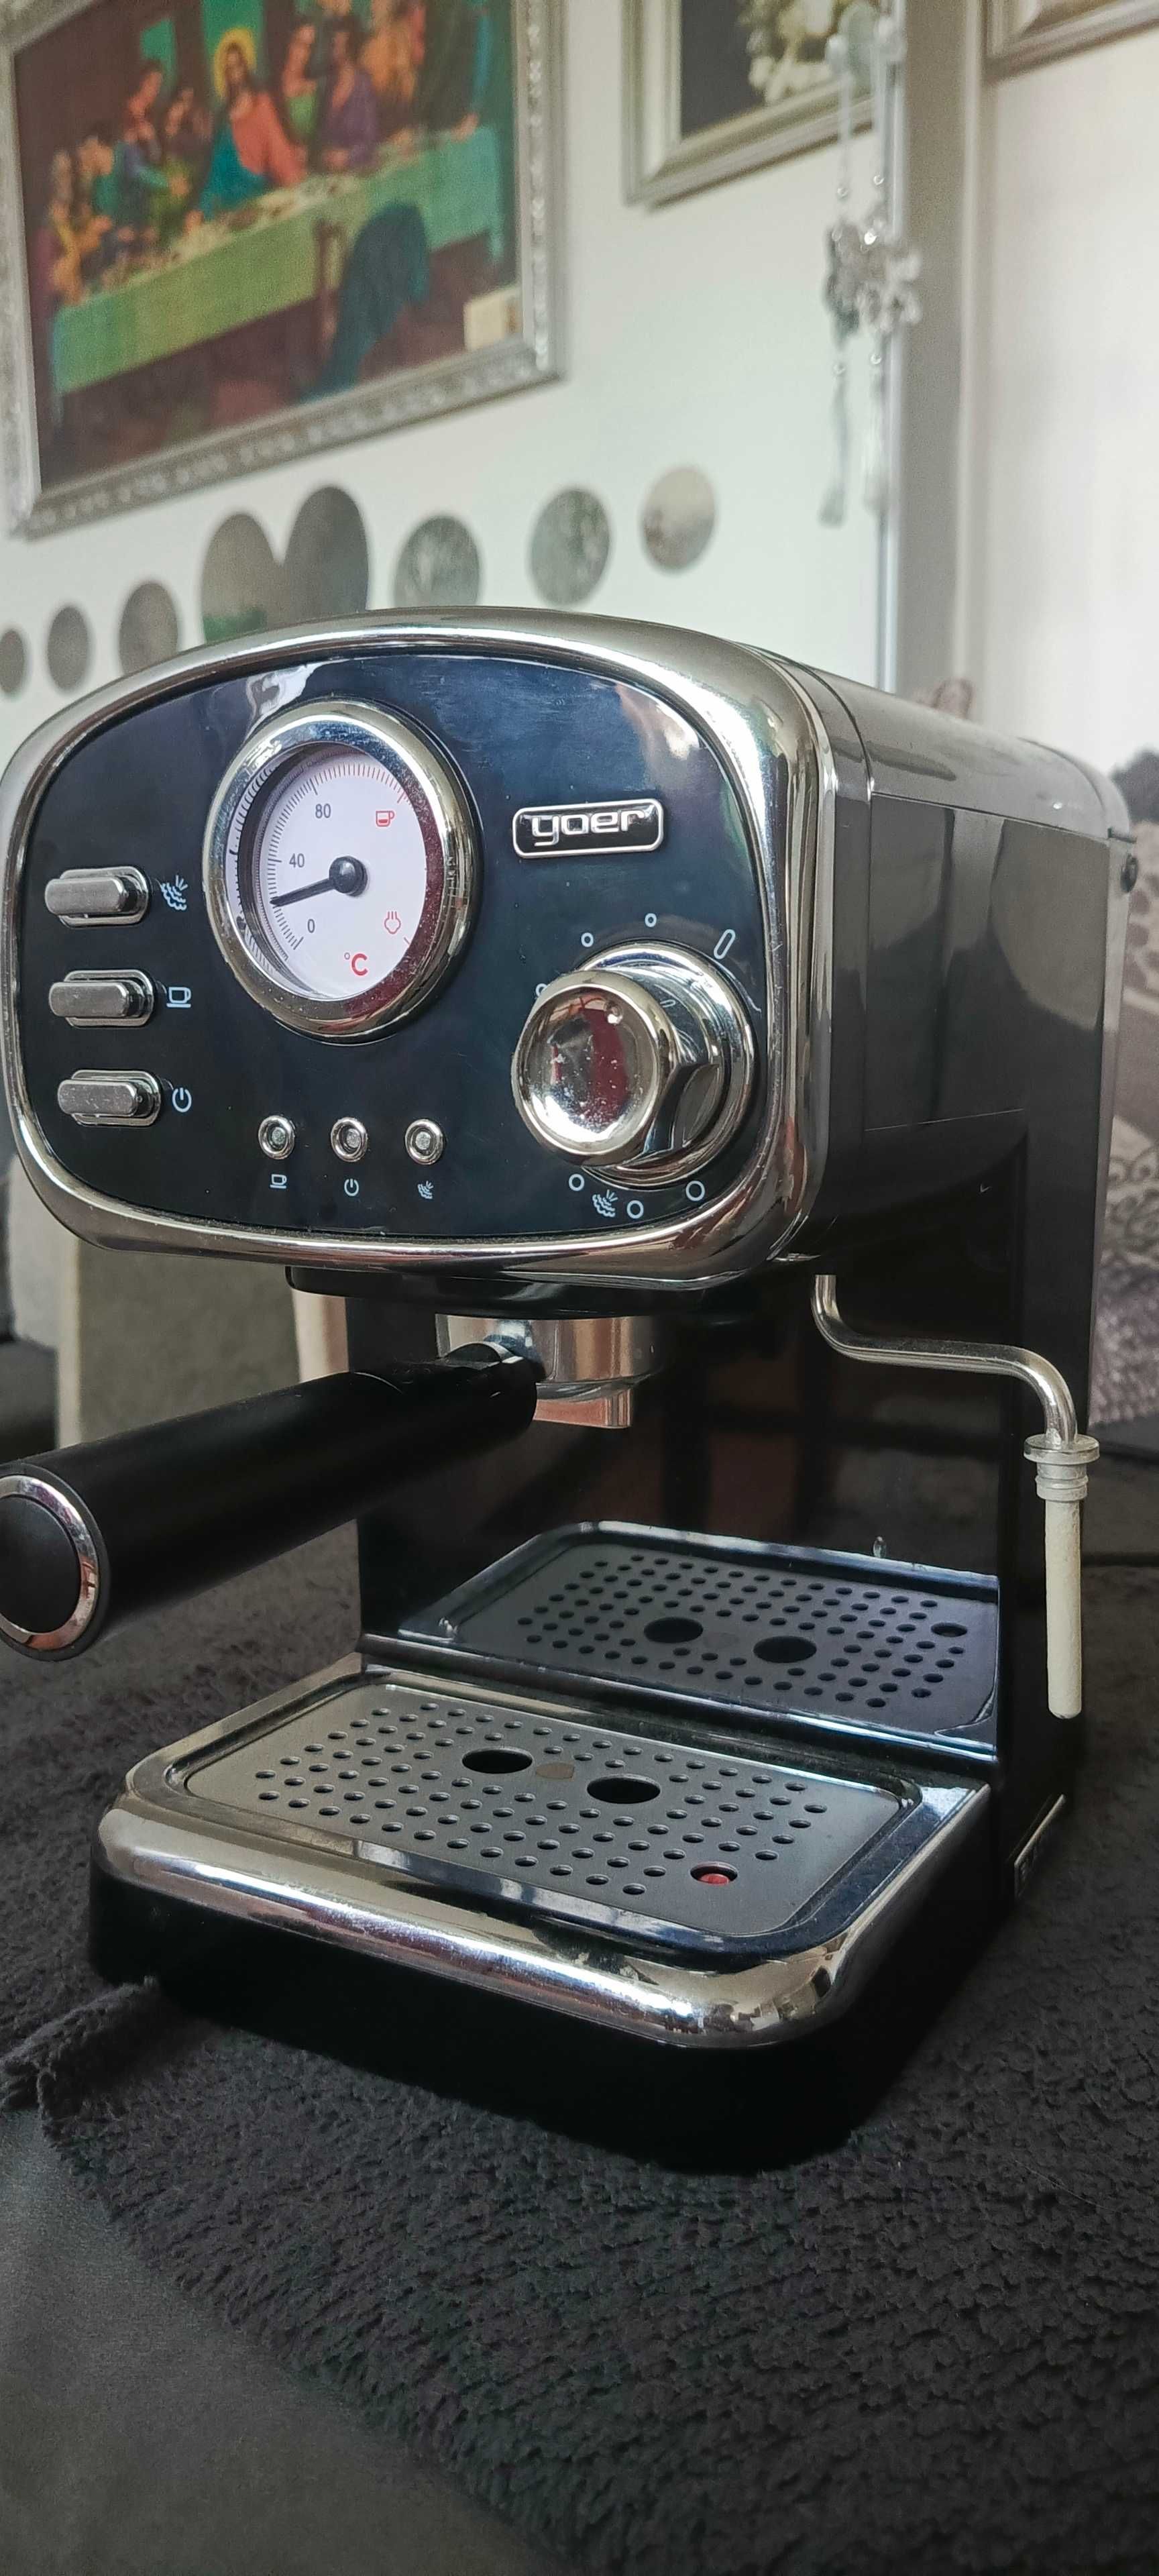 Ciśnieniowy Express do kawy + gwarancja